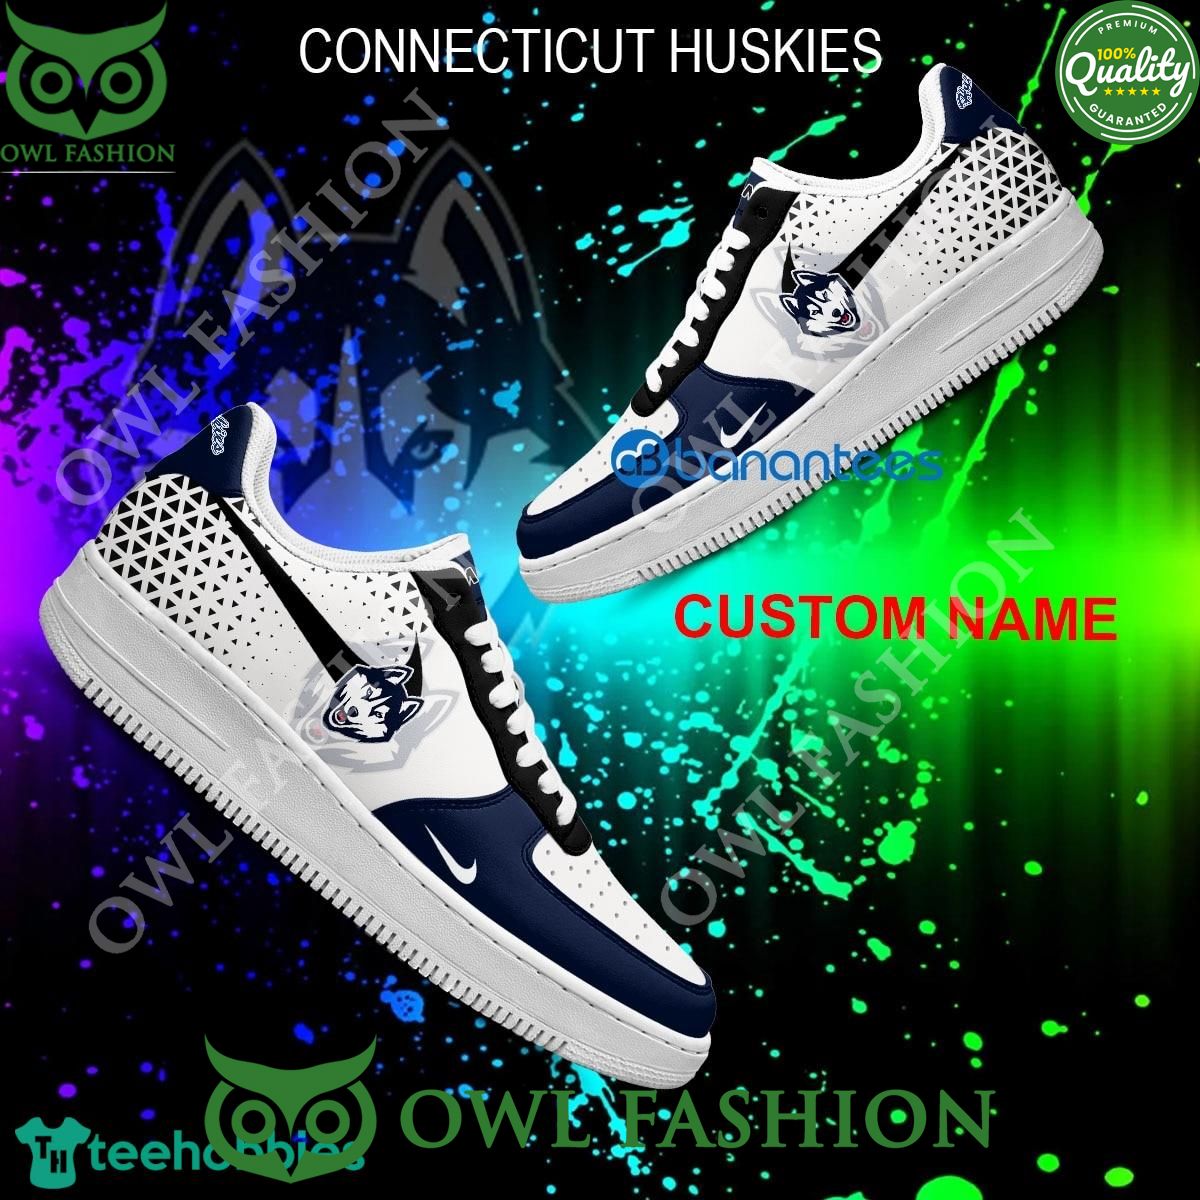 custom name ncaa connecticut huskies air force 1 shoes aop af1 sneaker 1 MJZ8o.jpg